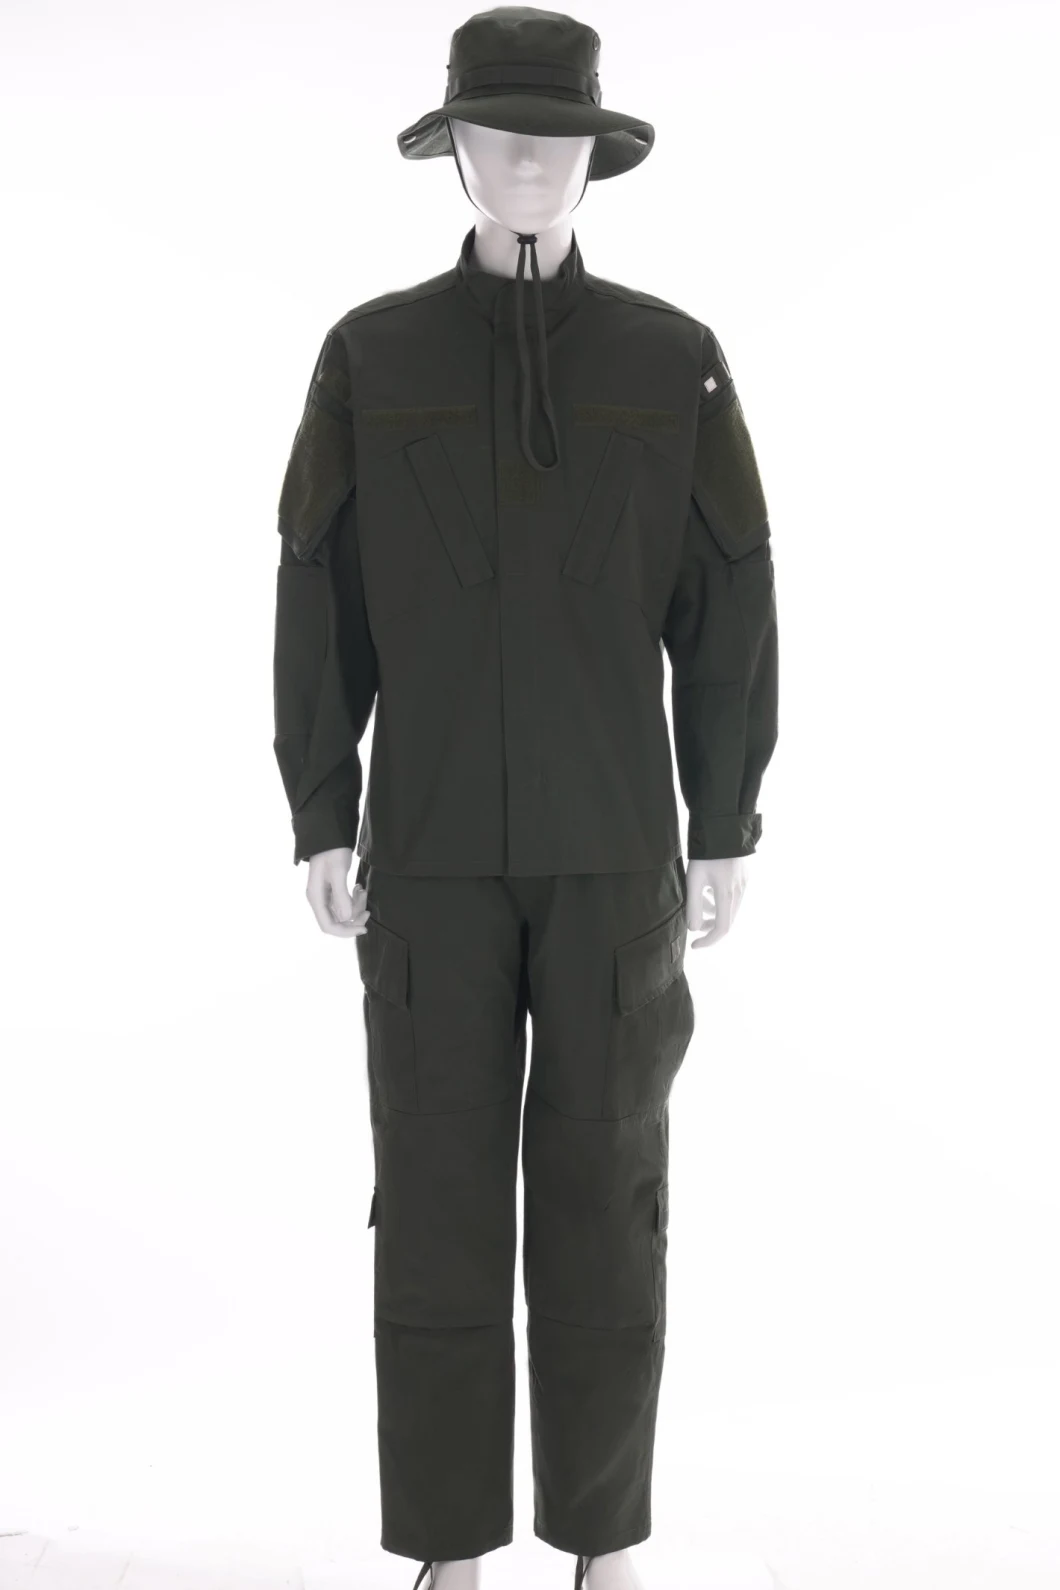 Ripstop Camouflage Uniform/Tactical Uniform/Bdu/Acu/Jacket/Pants